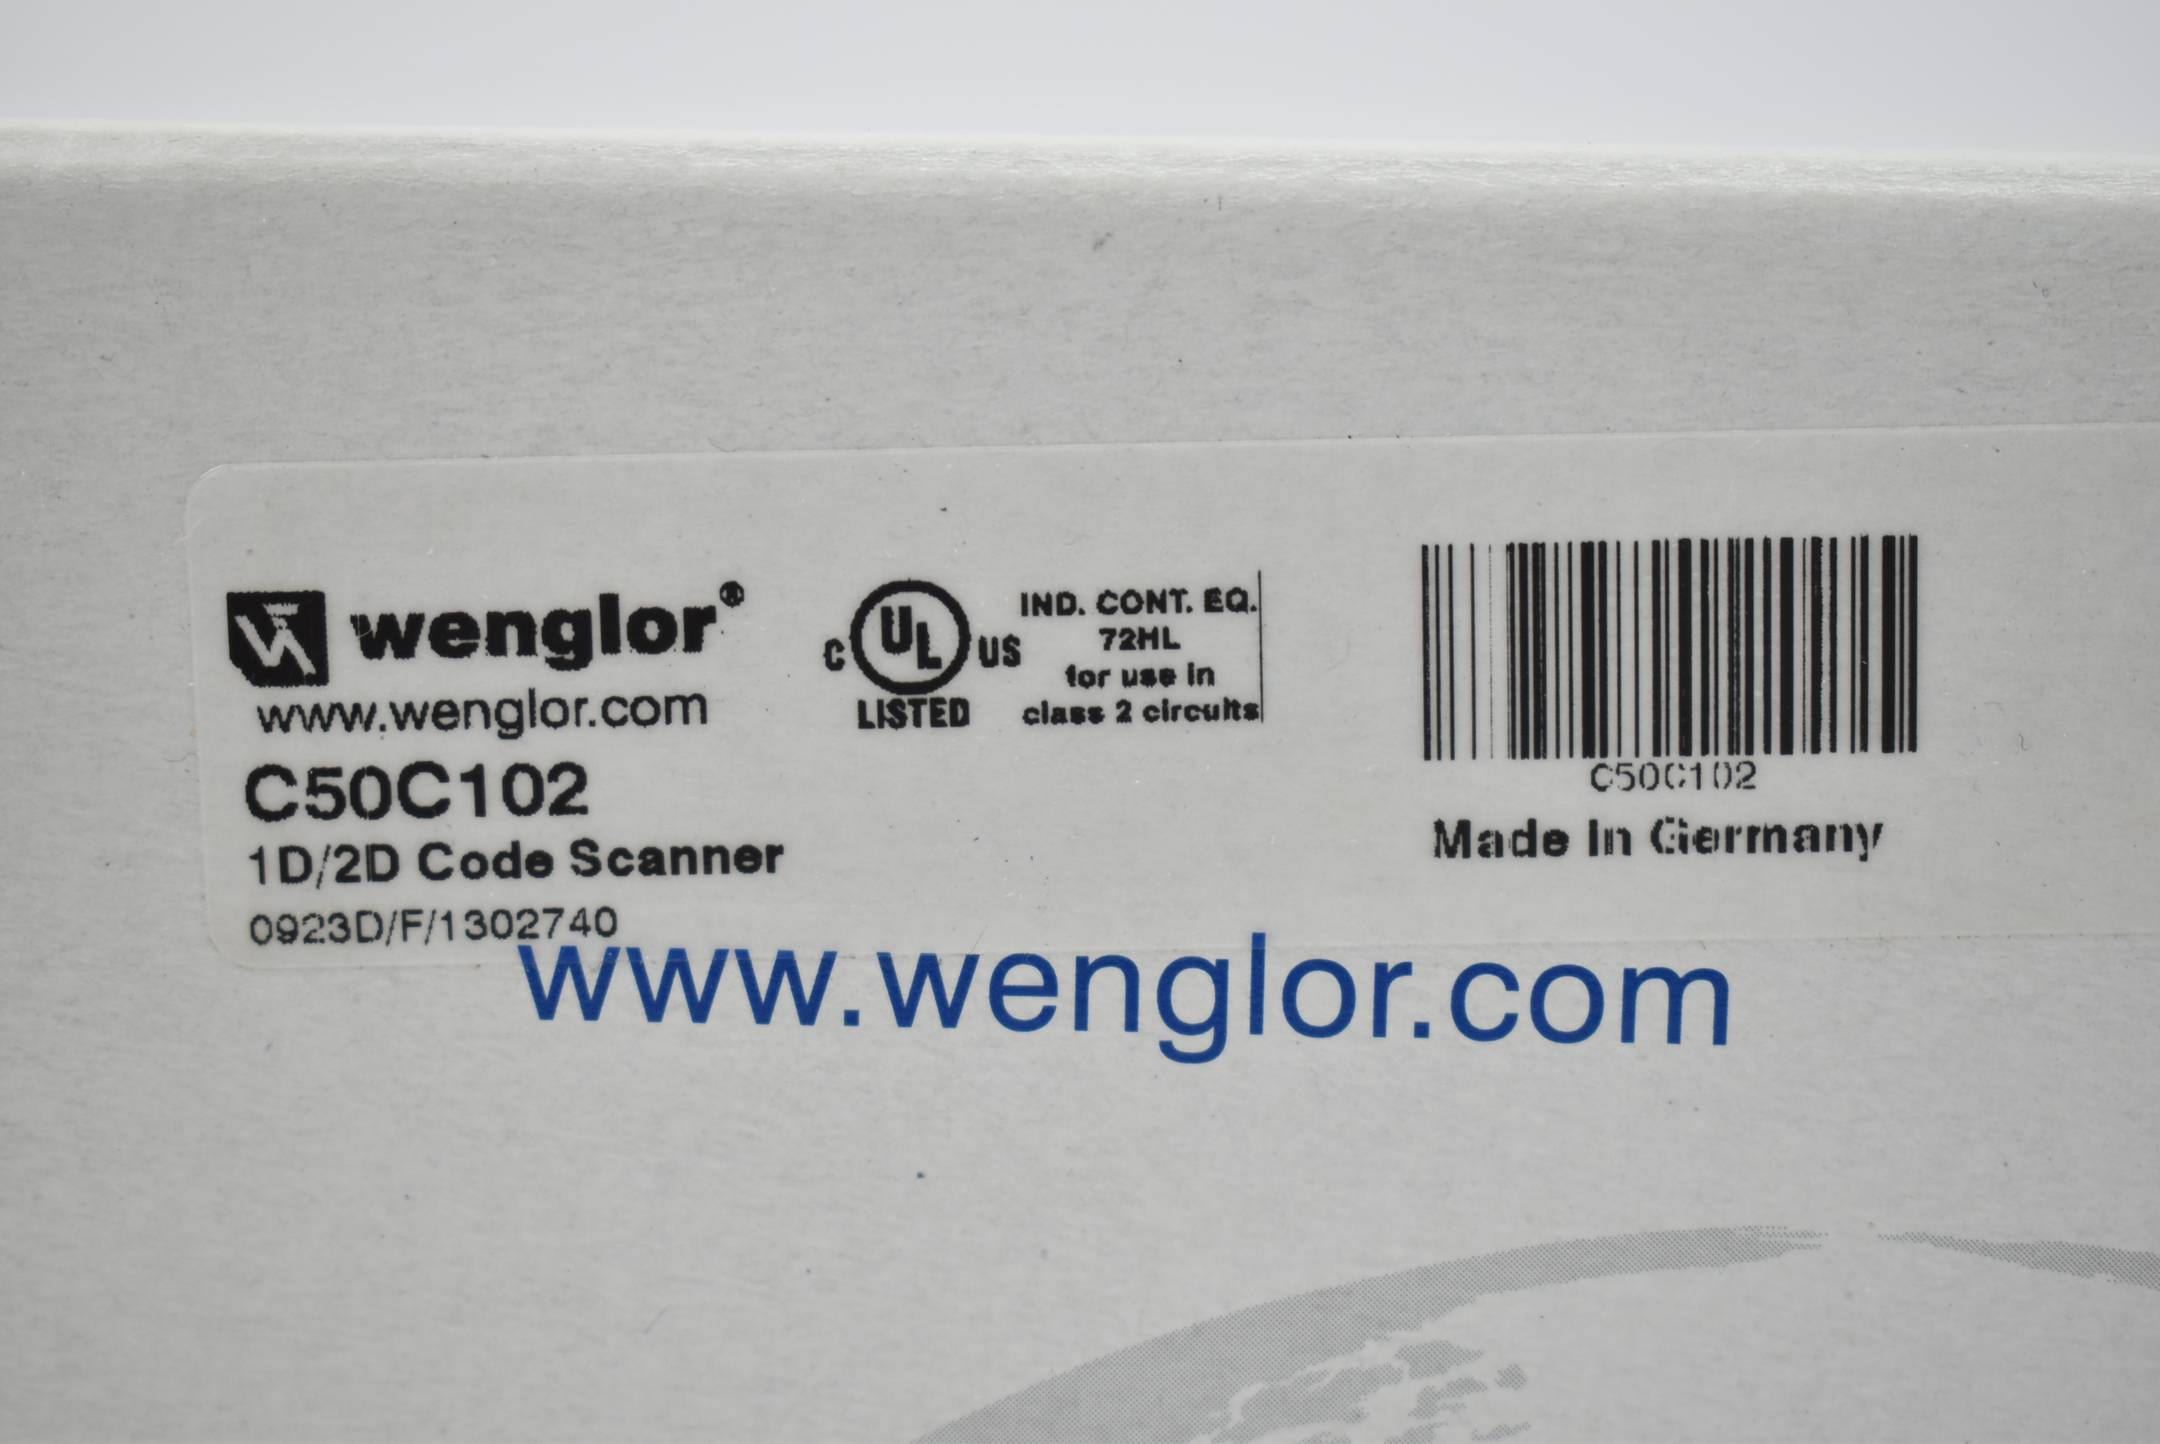 Wenglor 1D/2D Code Scanner C50C102